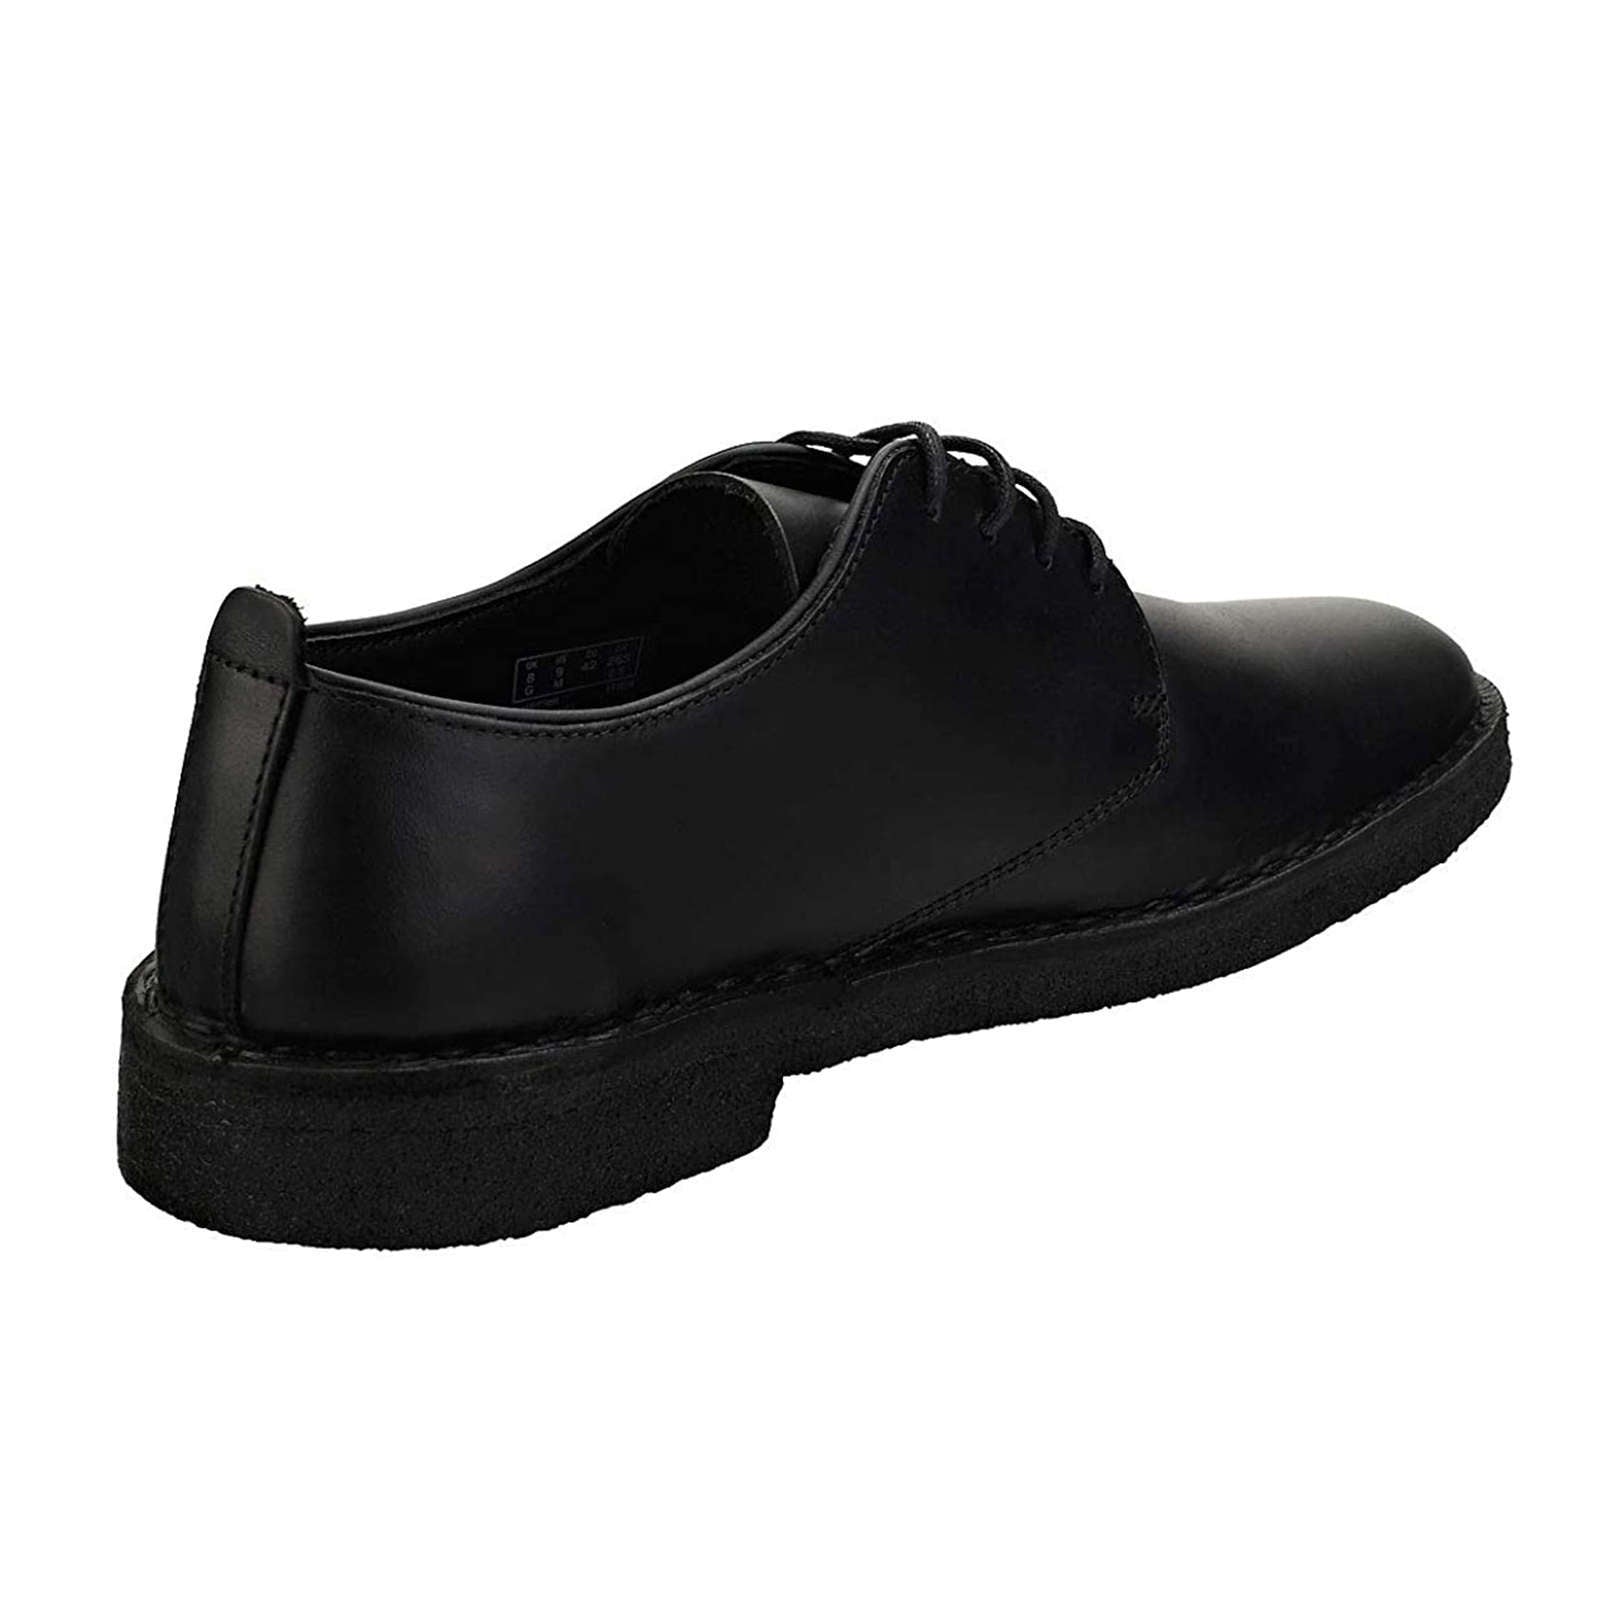 Clarks Originals Desert London Leather Men's Shoes#color_black